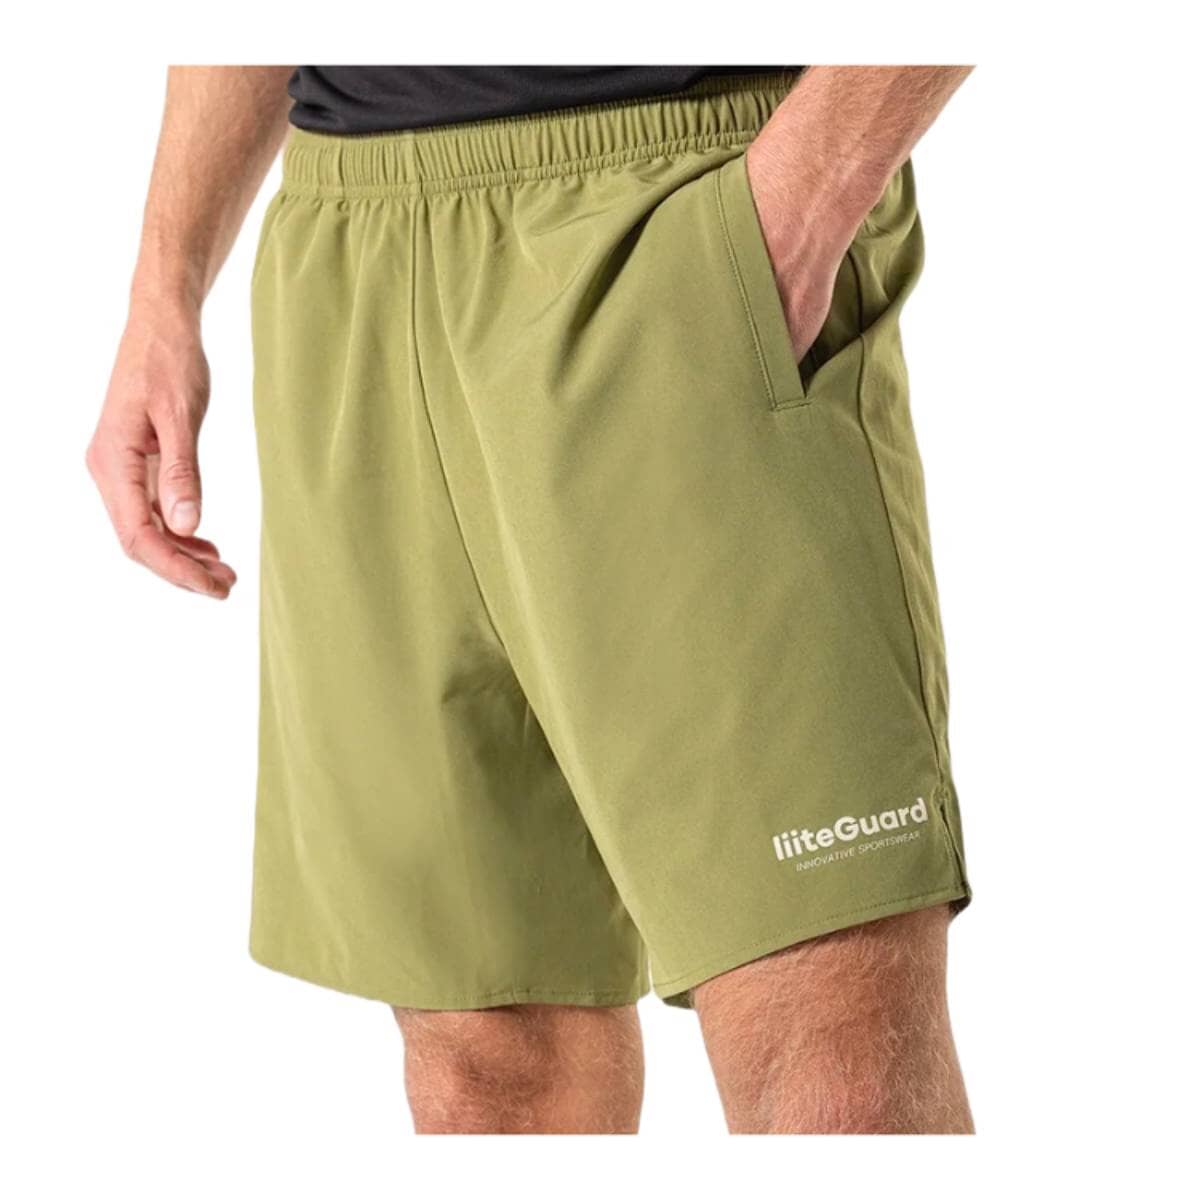 Liiteguard Re-liite Shorts Men Dusty Green